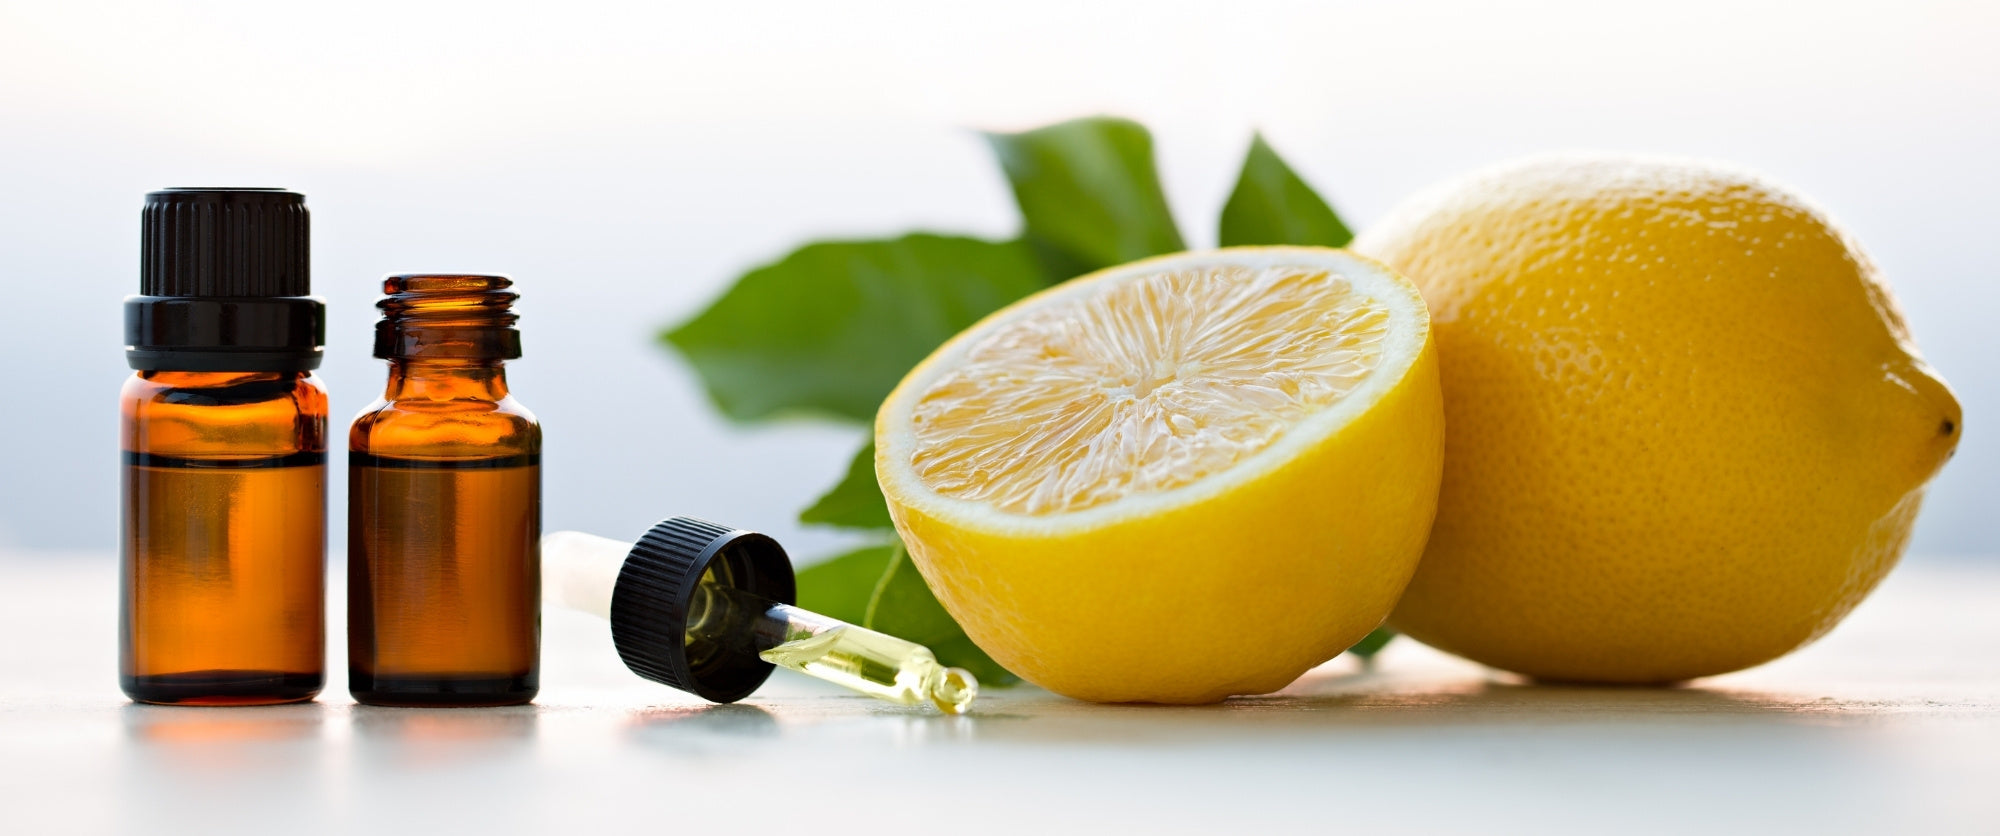 limonene-limone-olio-essenziale-cosmetico-cosmetica-solida-vegana-biodizionario-officina-saponi-cosmetici